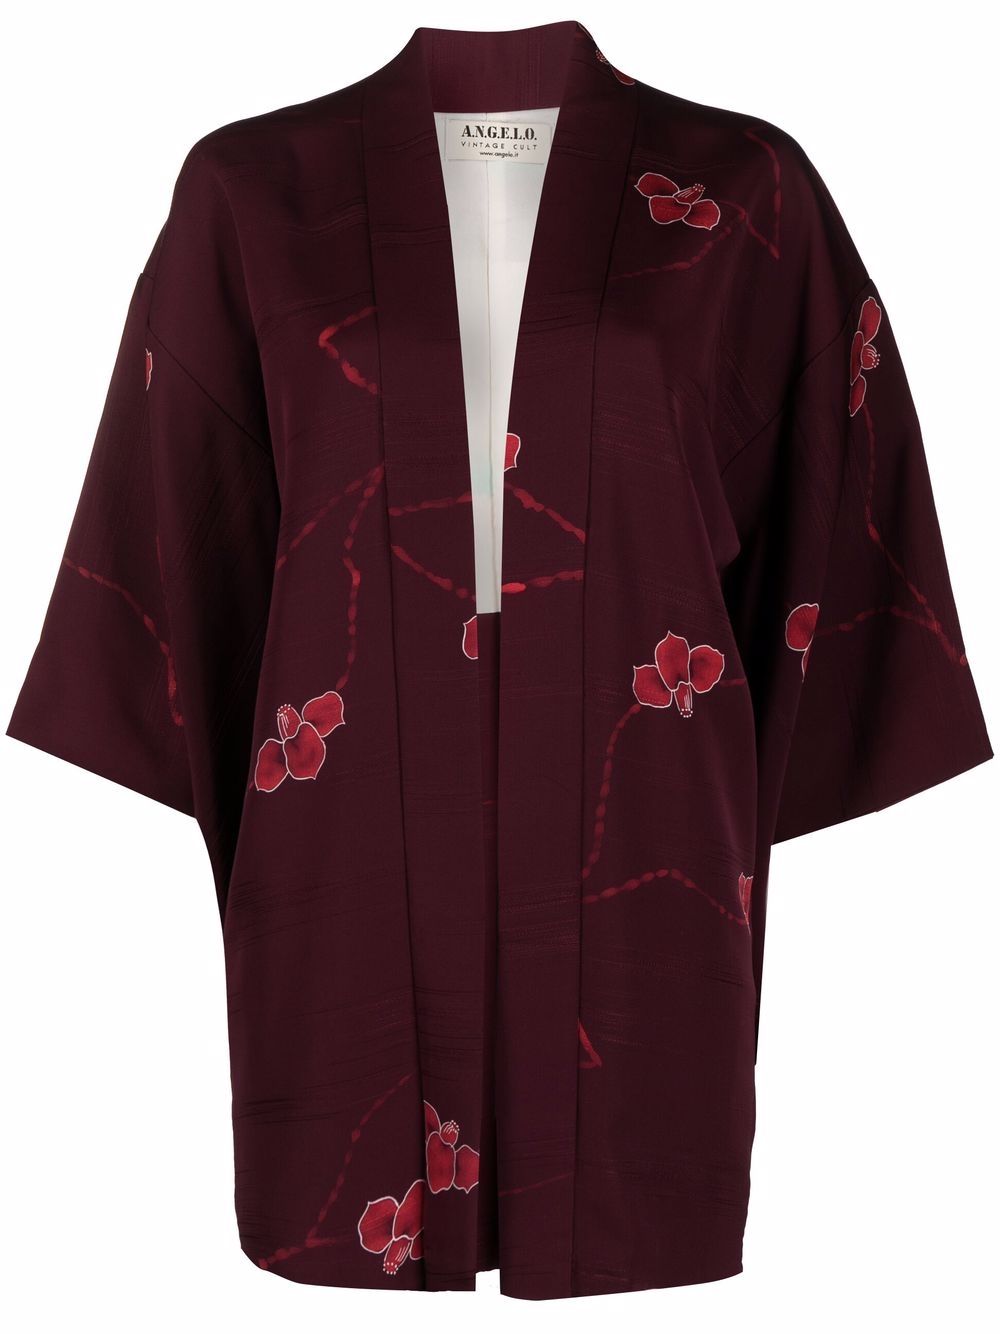 фото A.n.g.e.l.o. vintage cult кимоно 1970-х годов с цветочным принтом